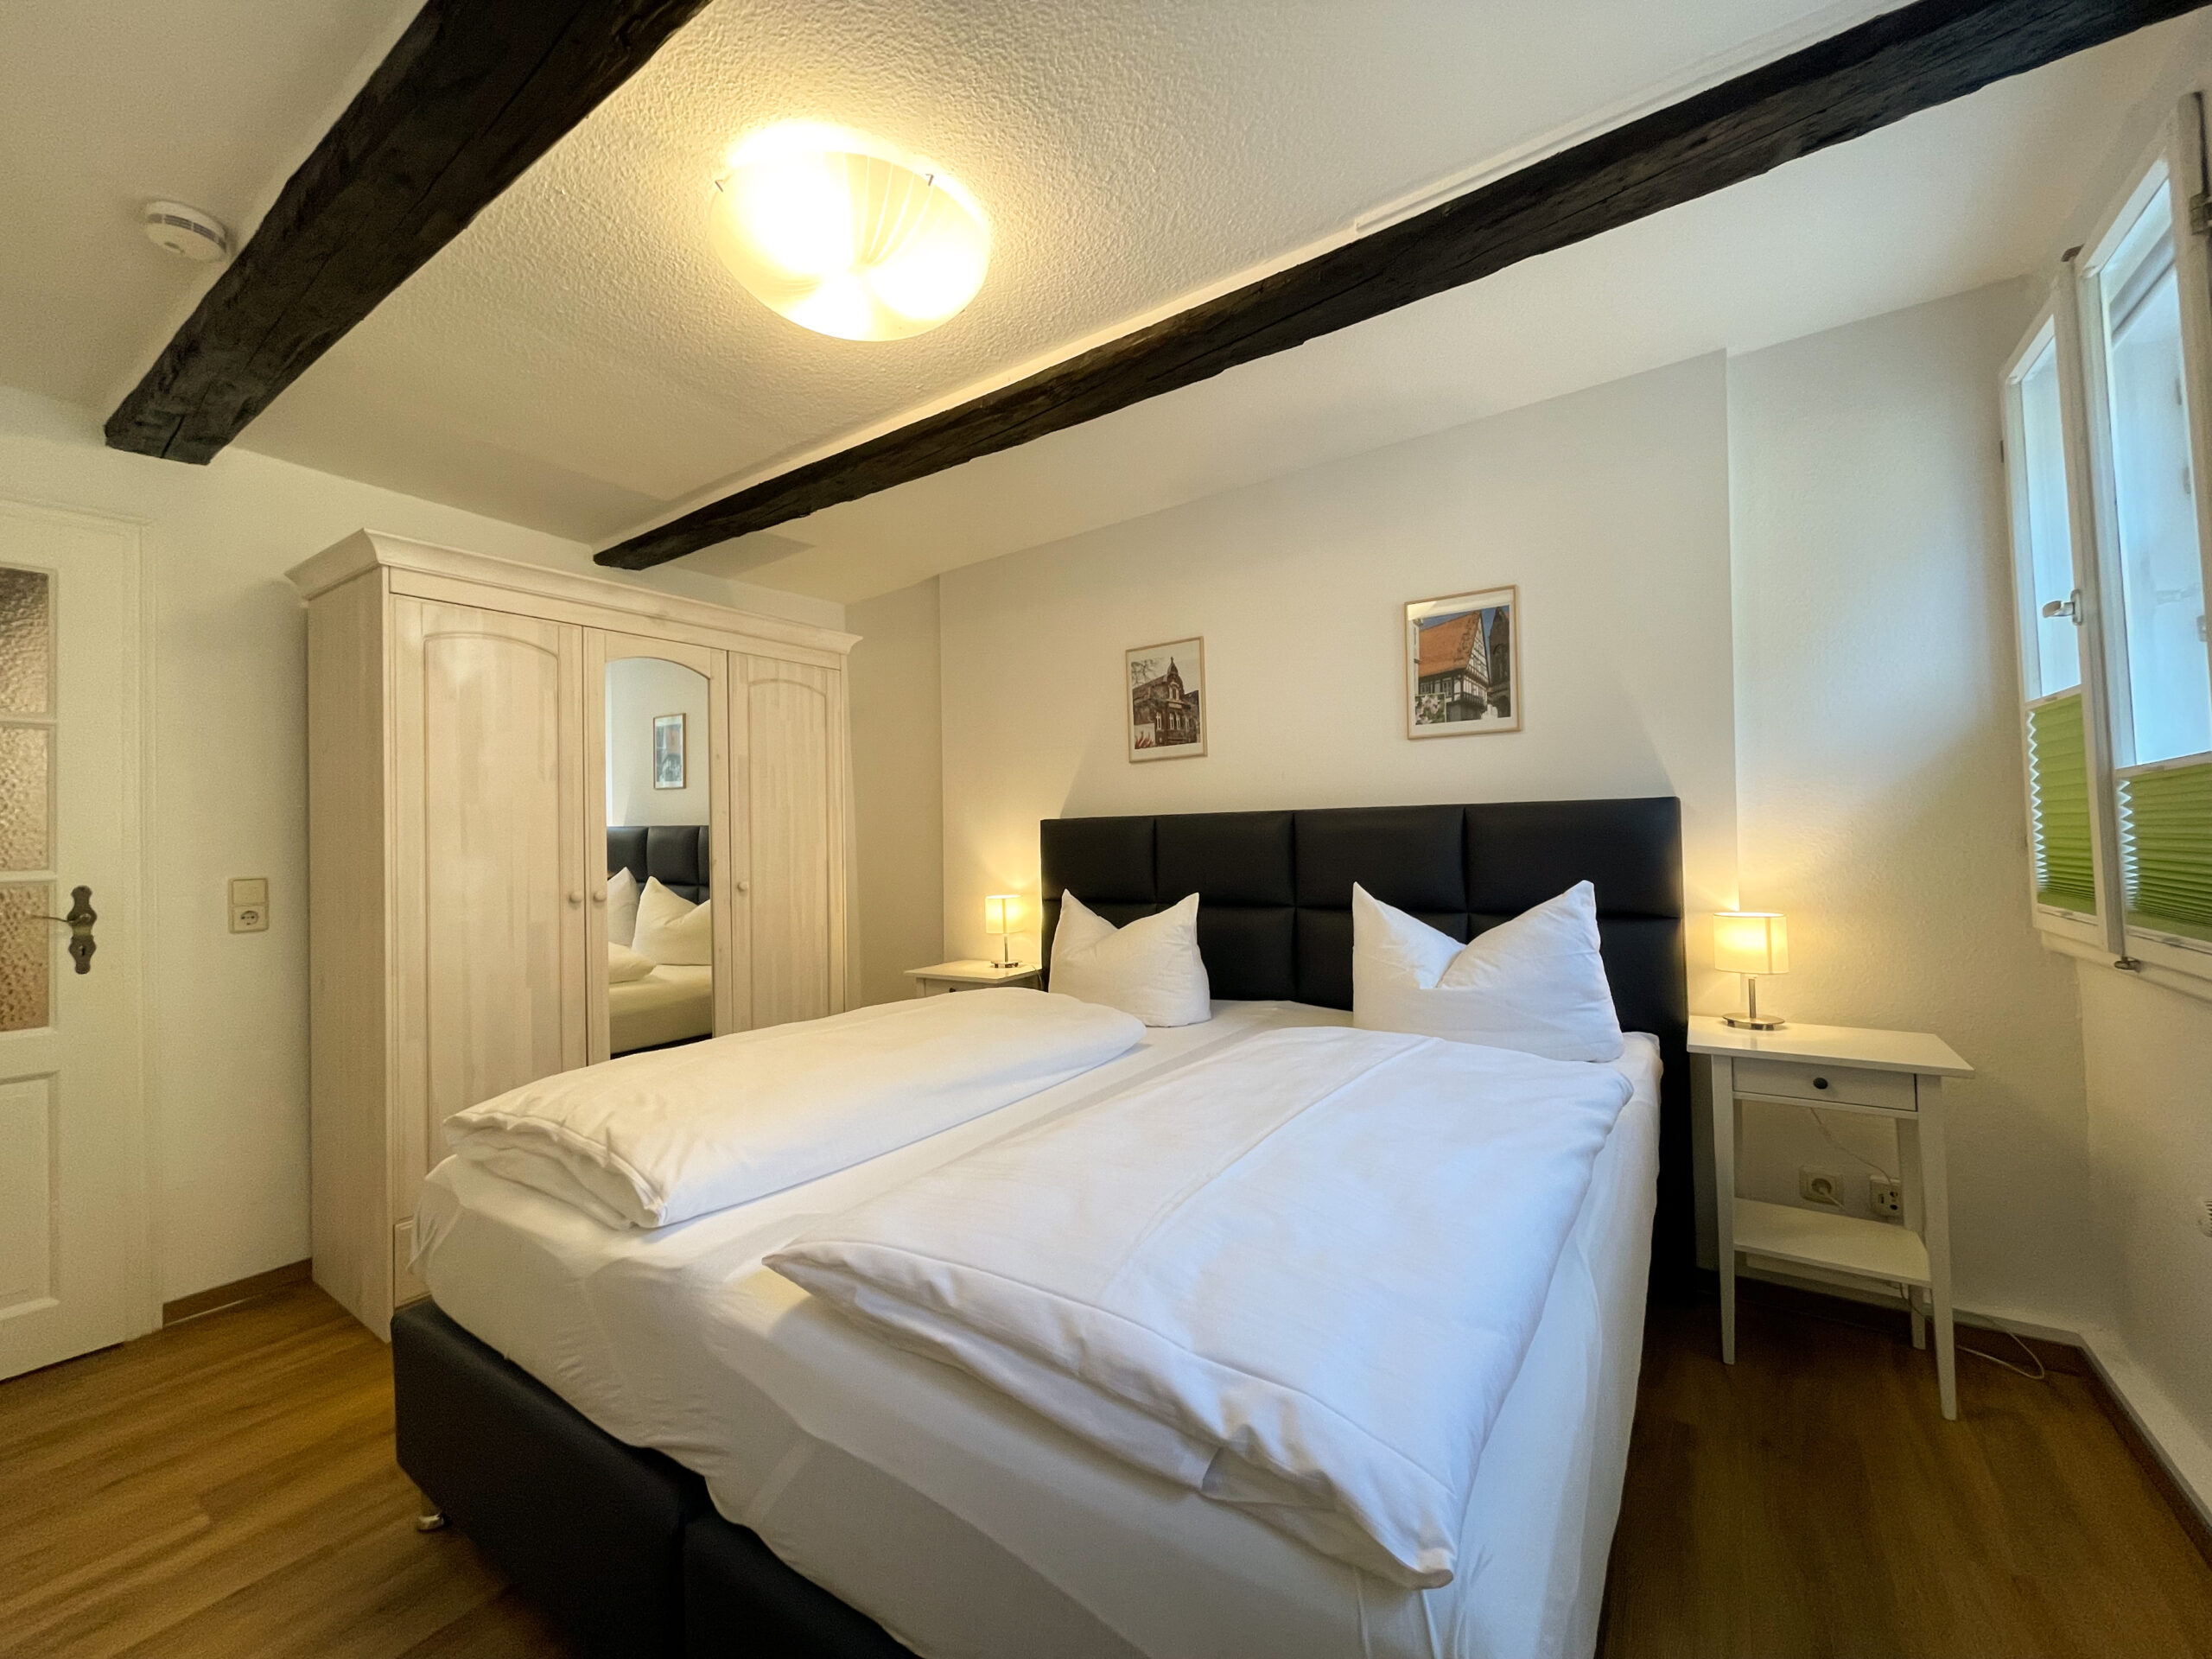 Schlafzimmer mit Doppelbett, Nachttischen und Nachttischlampen